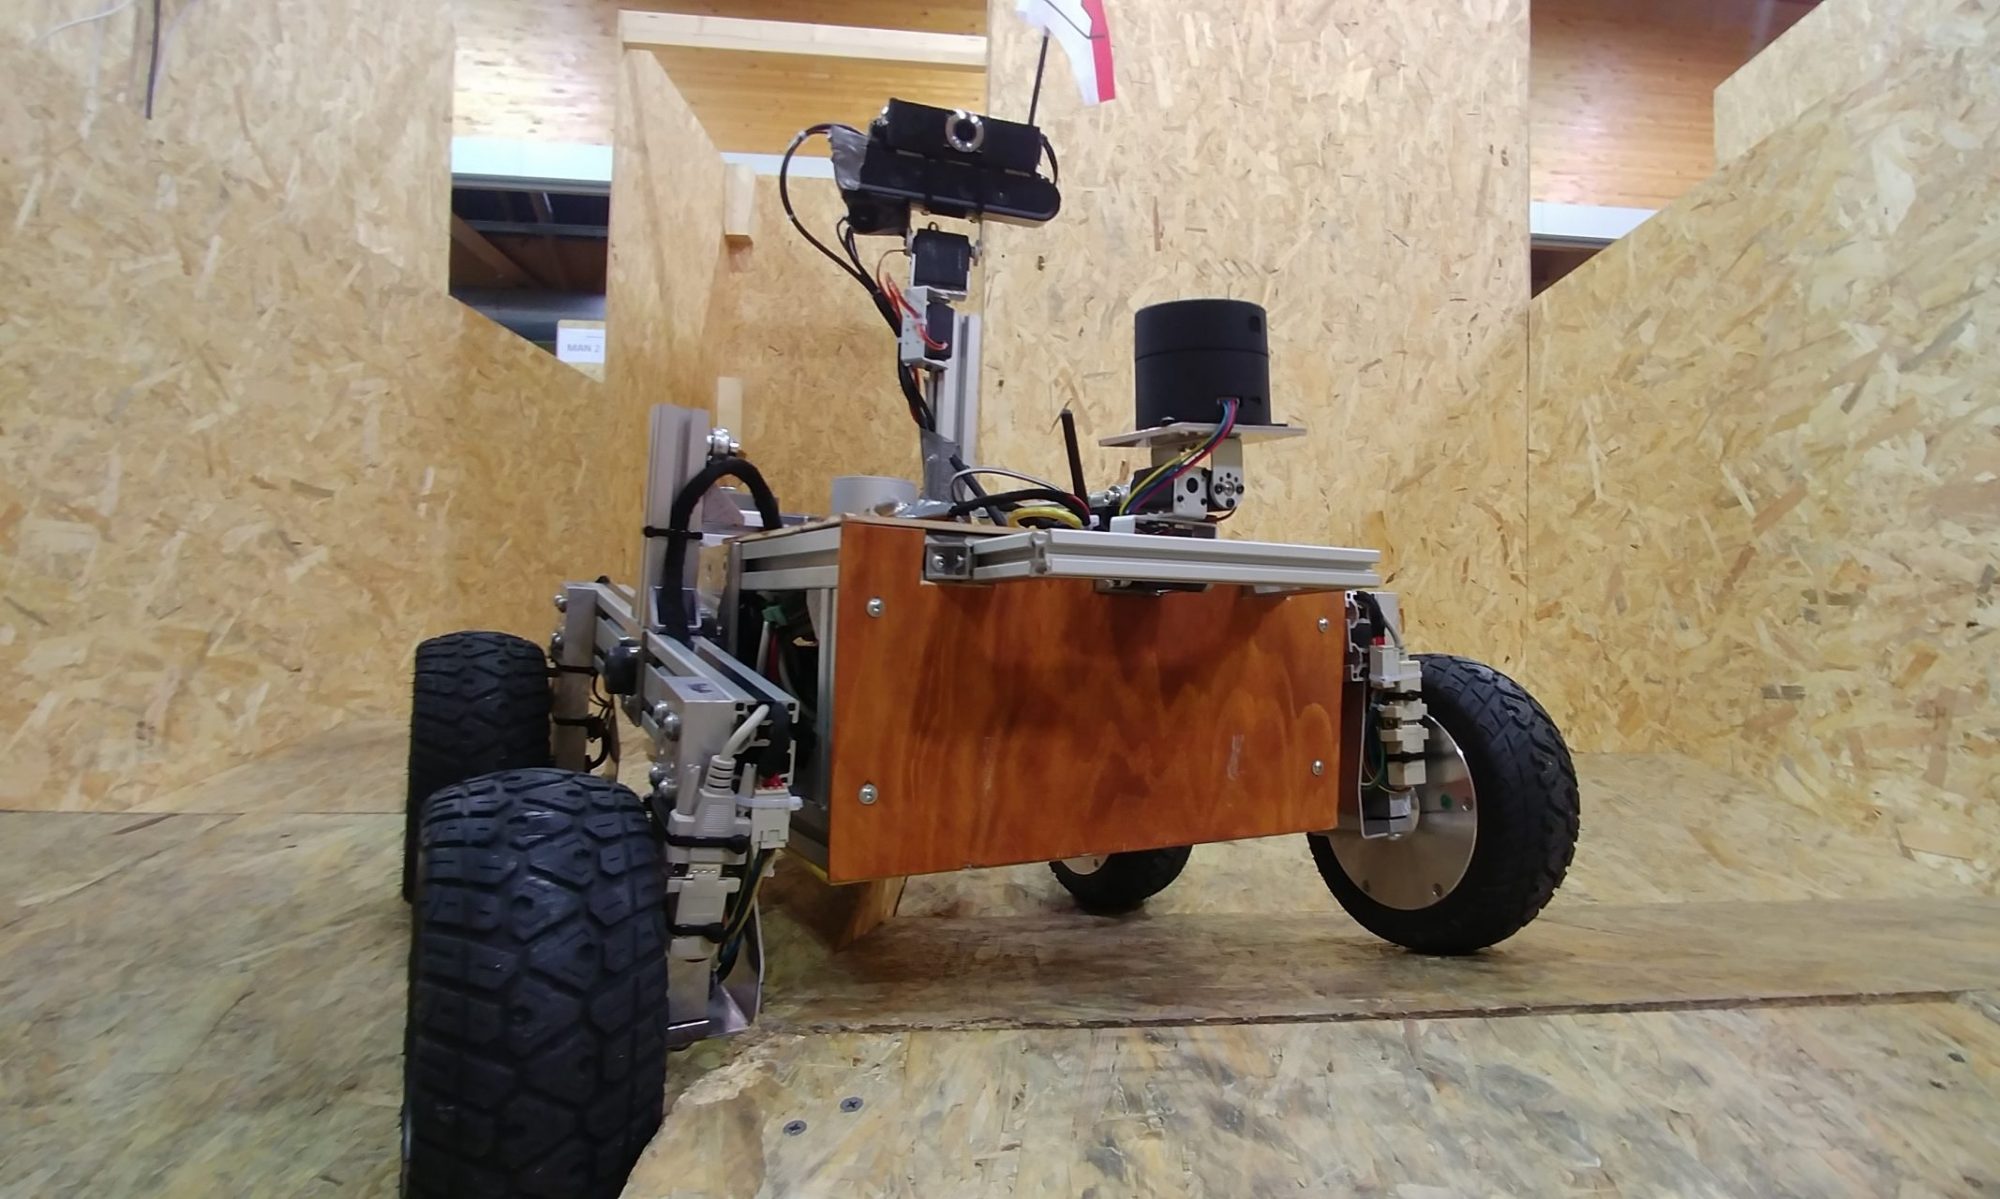 FRANCOR - Franconia Open Robotics